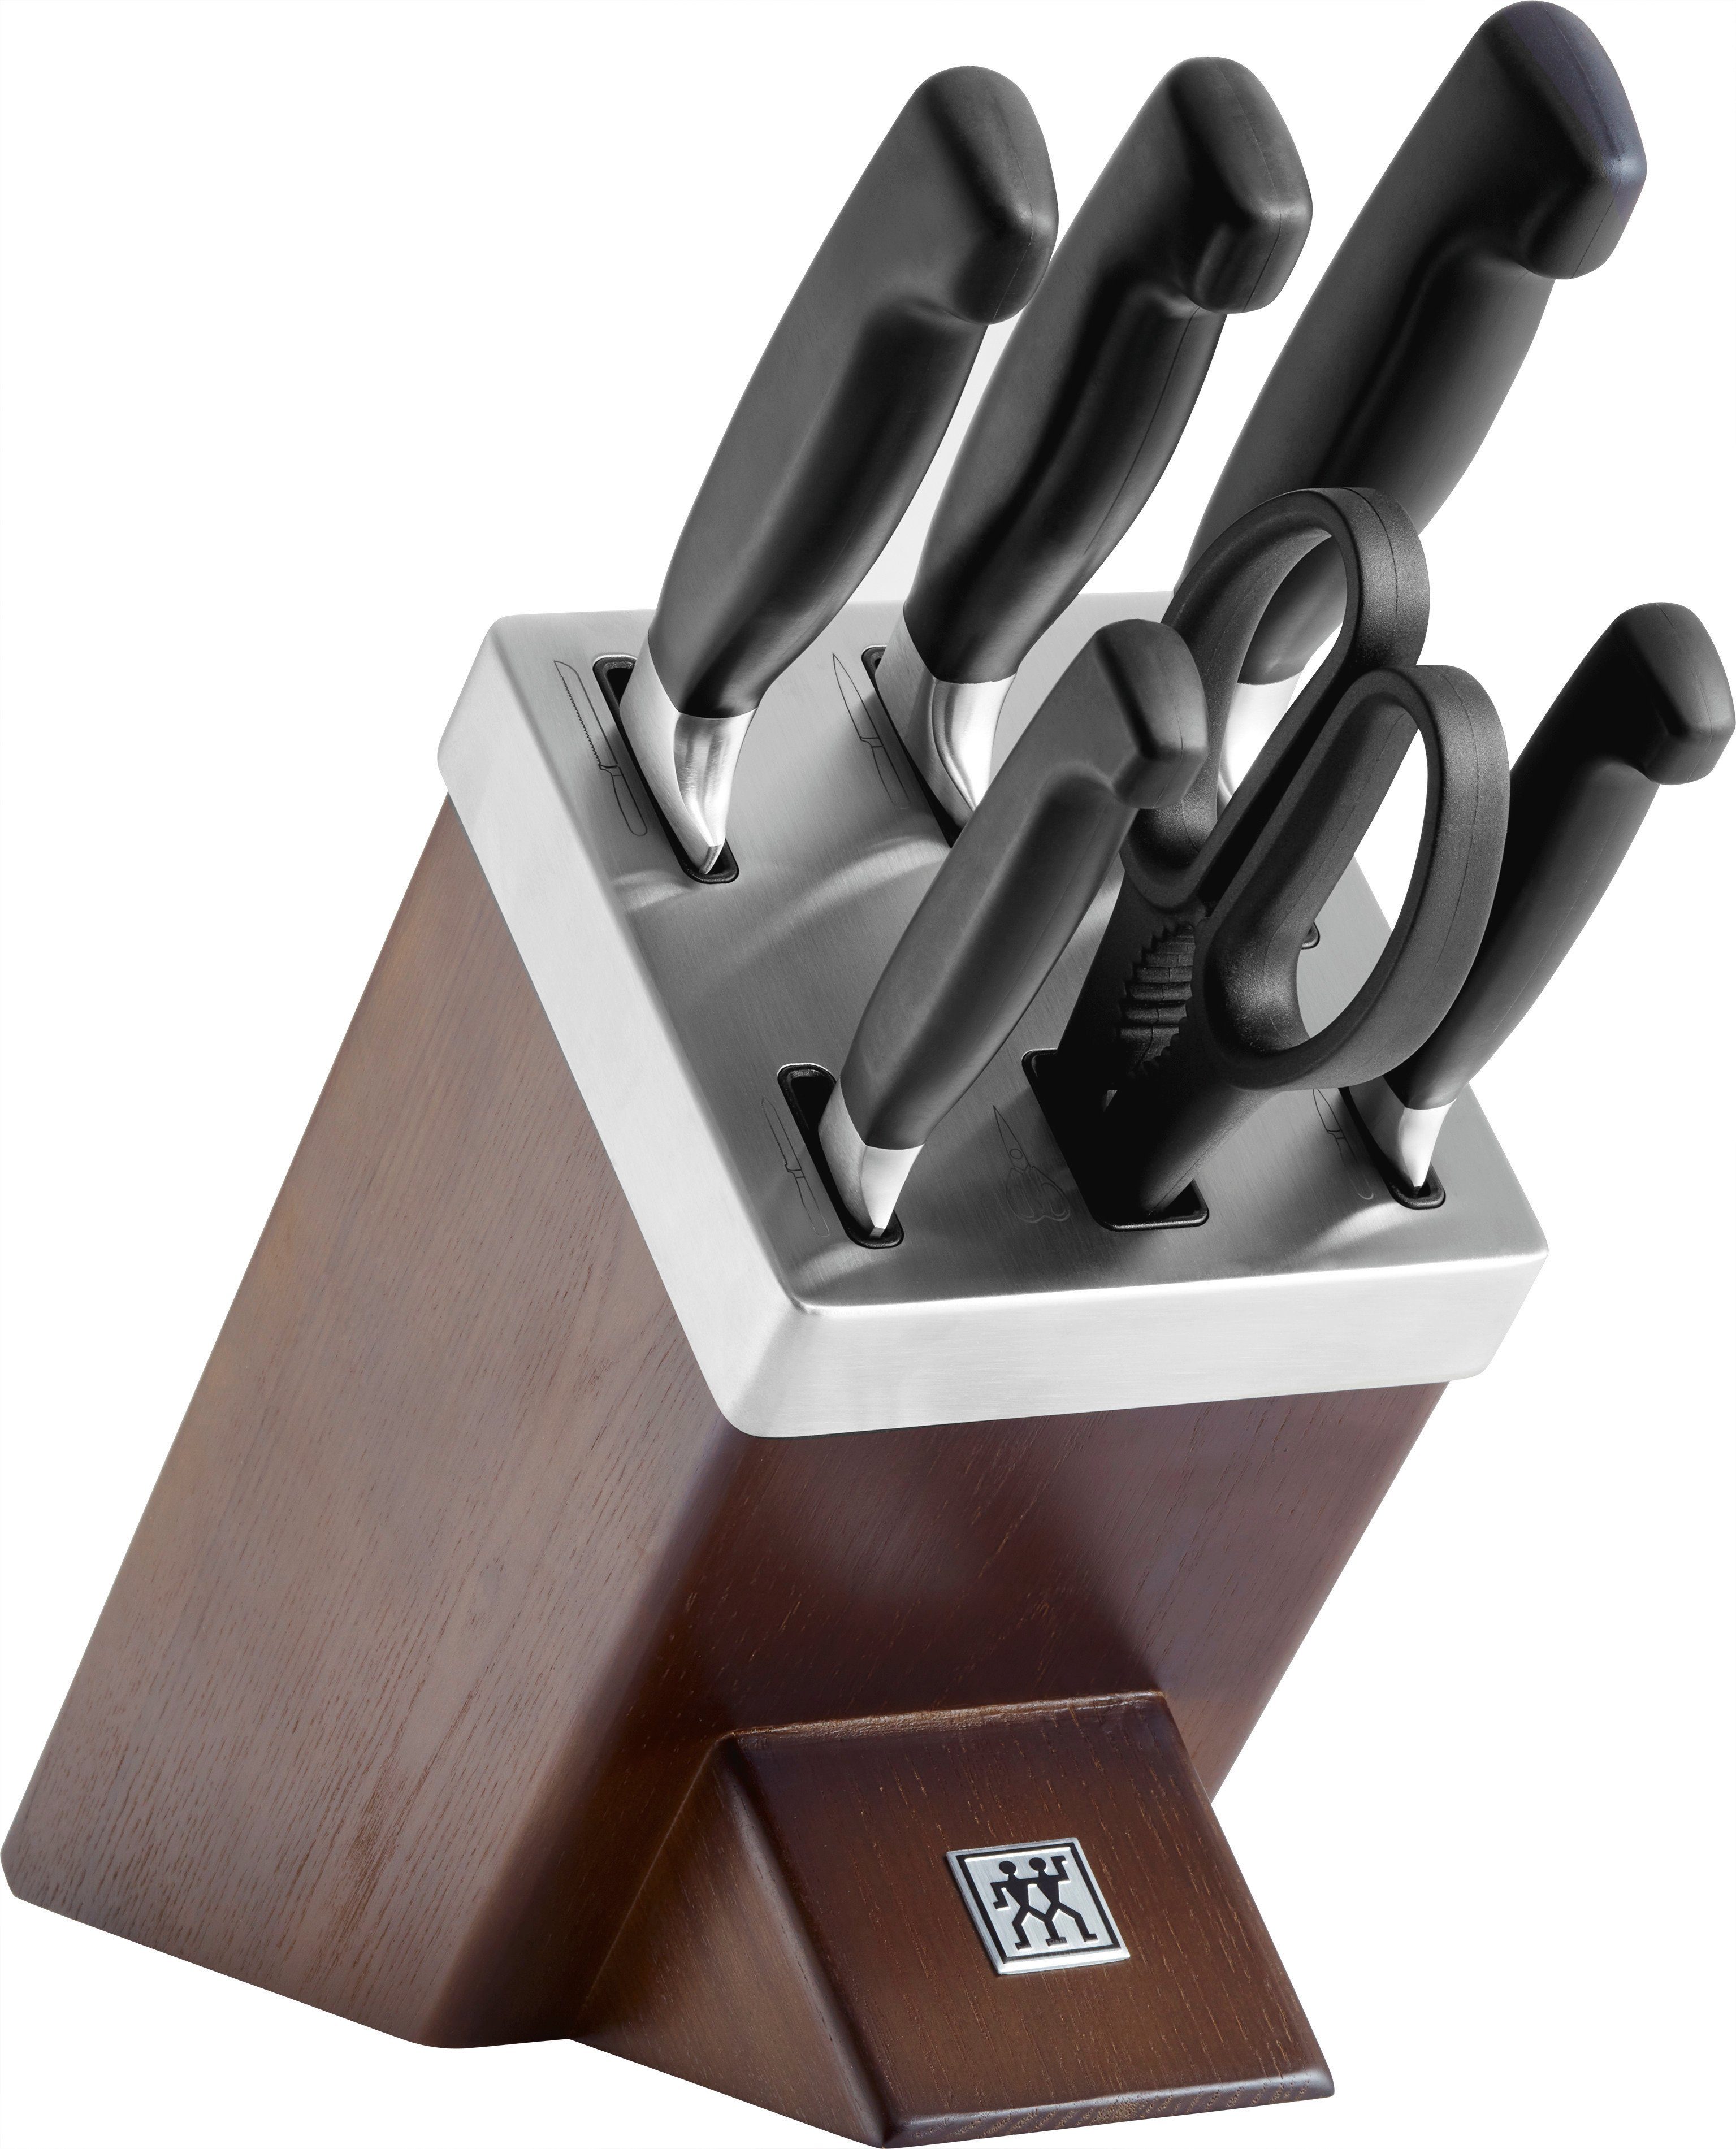 Zwilling Messerblock Vier Sterne 7-tlg., Made in Germany, Messer und Schere aus rostfreiem Spezialstahl Braun | Messersets